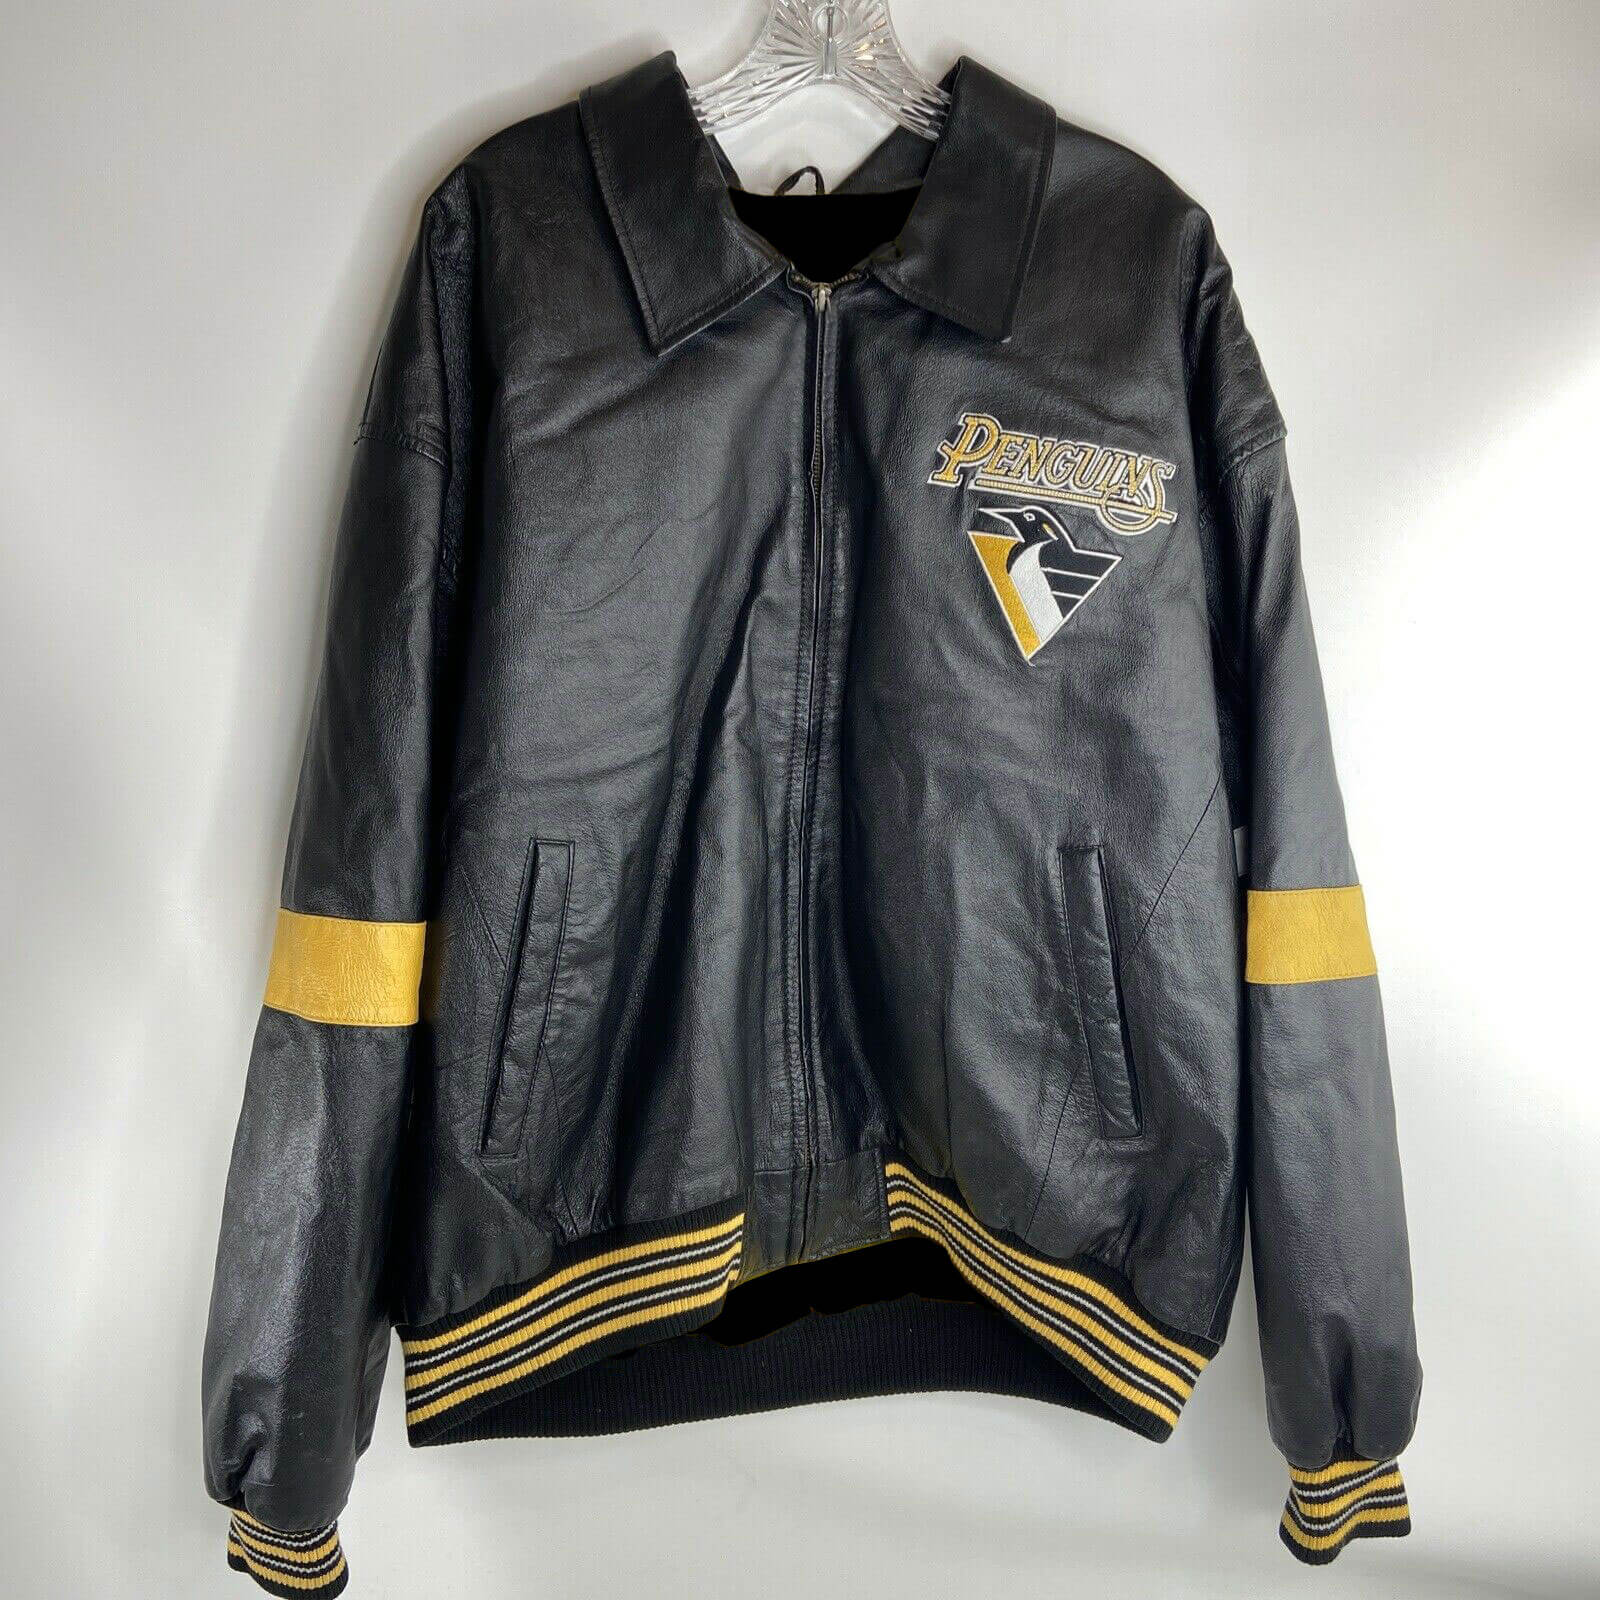 Pittsburgh Penguins Archives - Maker of Jacket